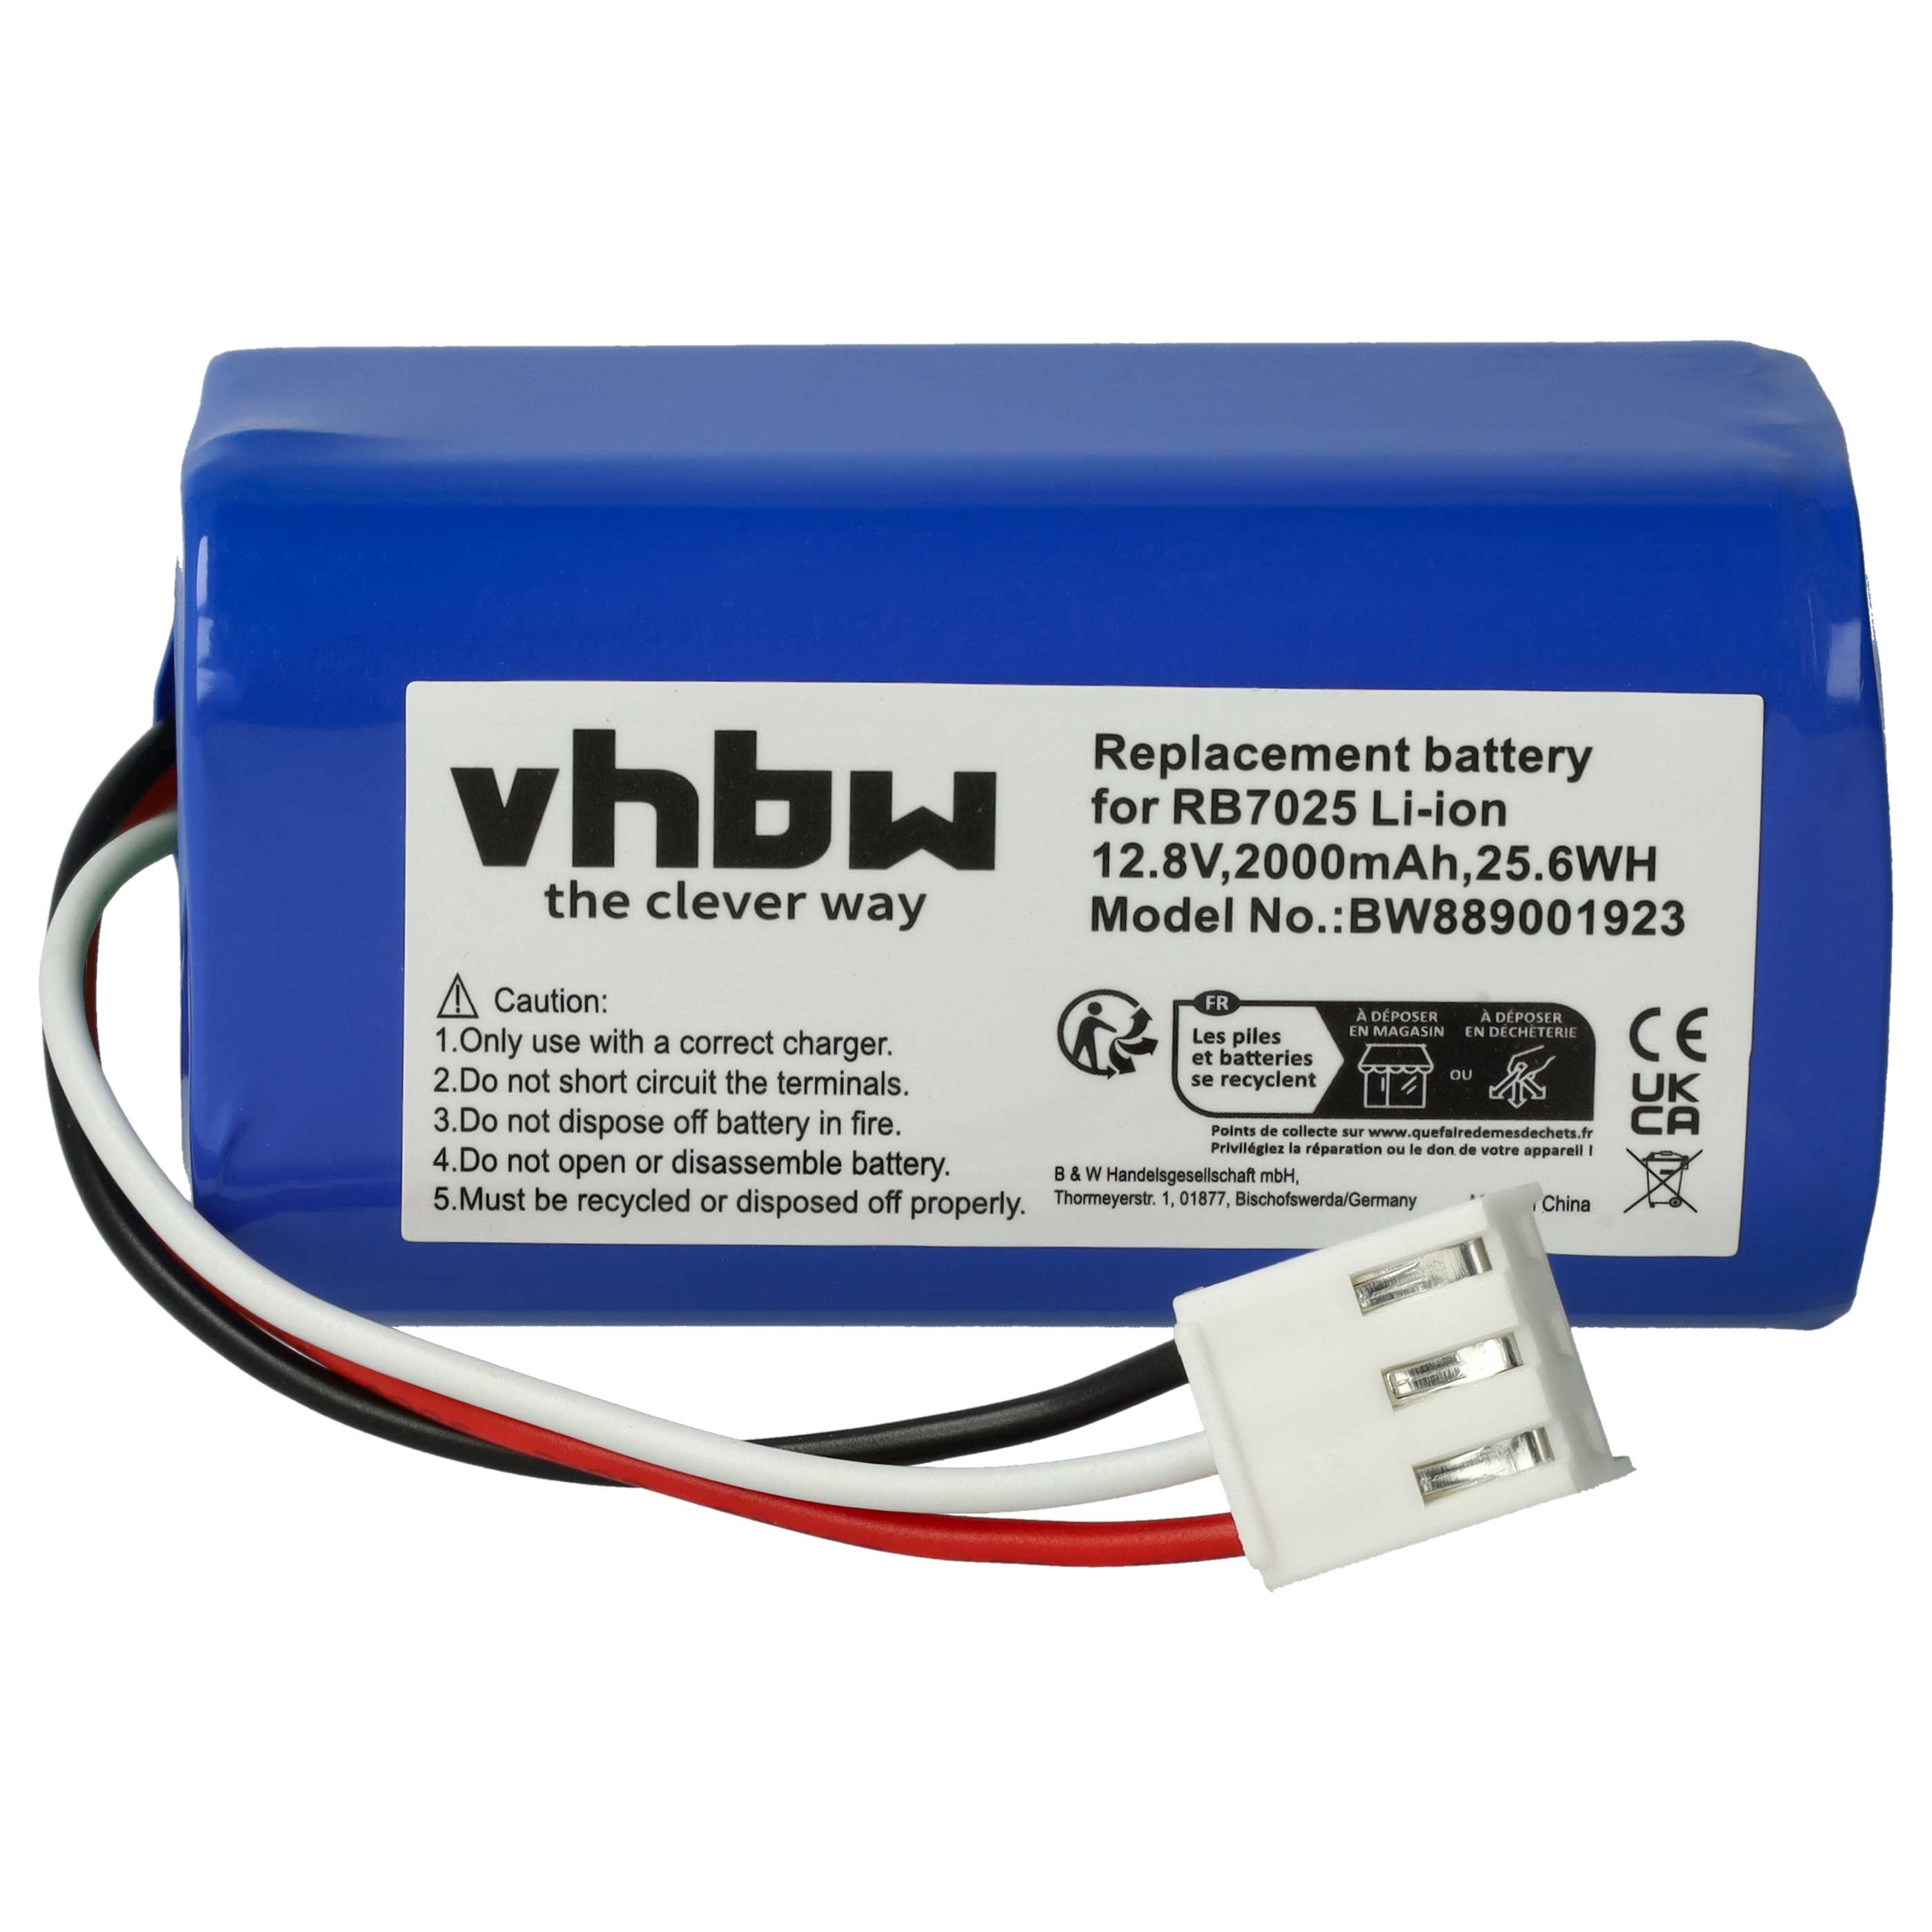 Batterie remplace Philips CP0111/01, 4IFR19/66 pour robot aspirateur - 2000mAh 12,8V Li-ion